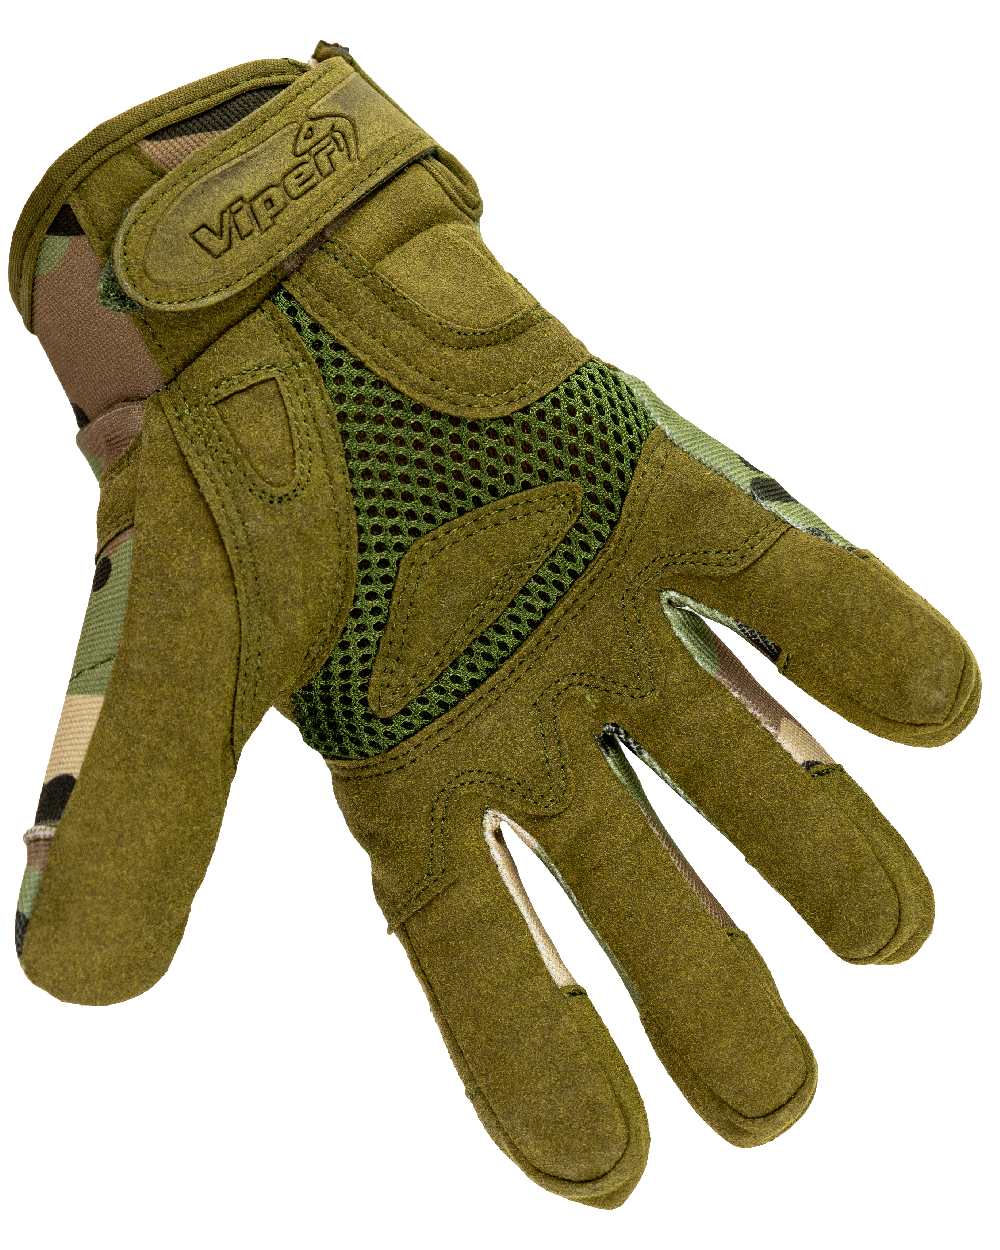 Viper Elite Gloves in VCAM 